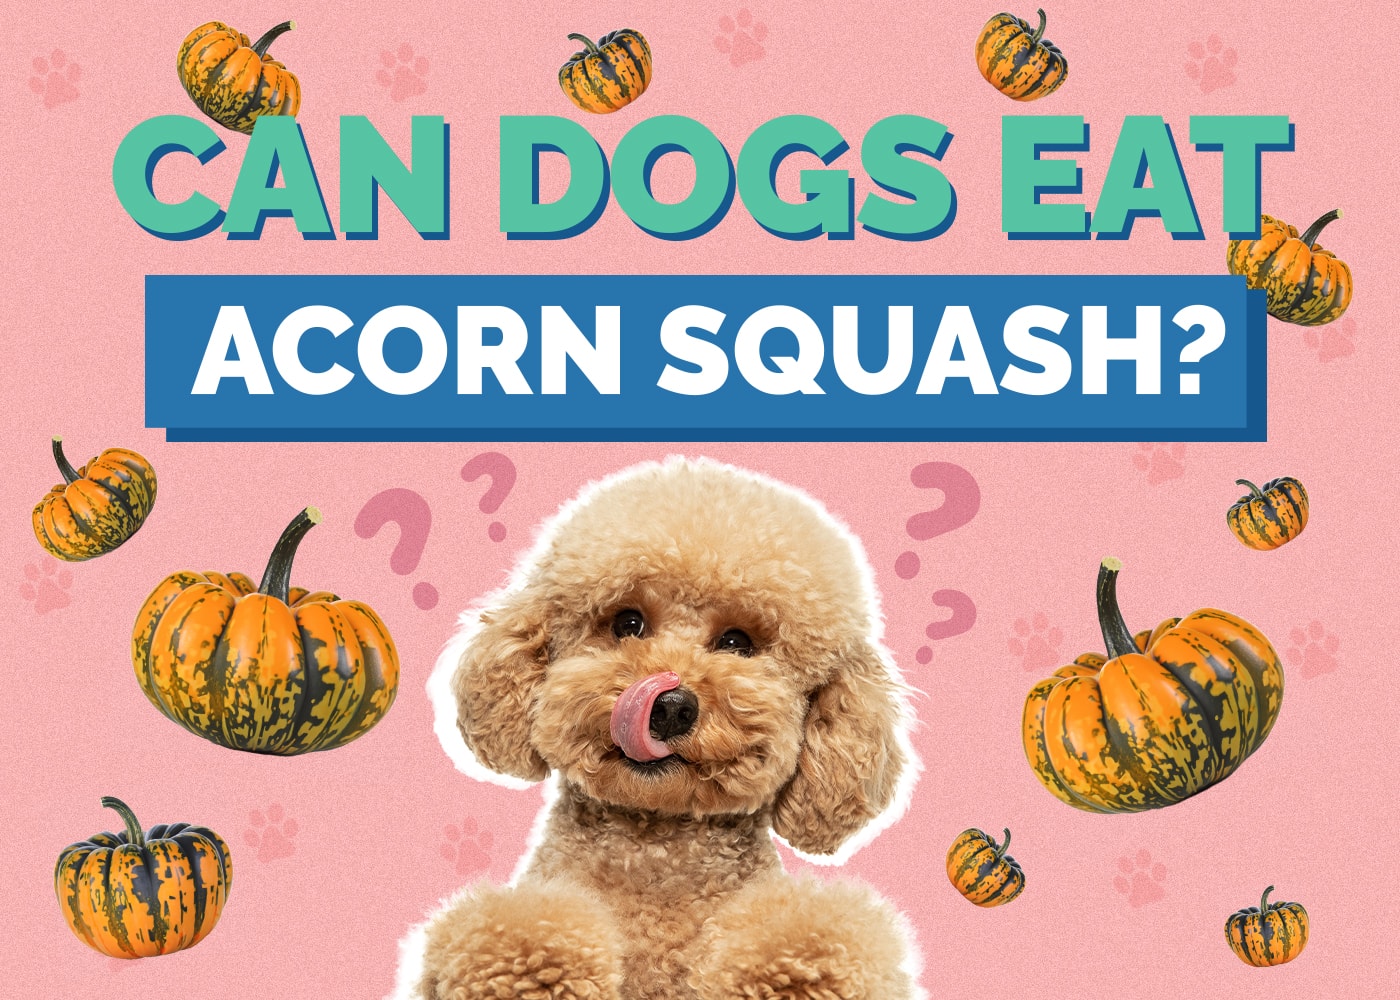 Can Dog Eat acorn squash